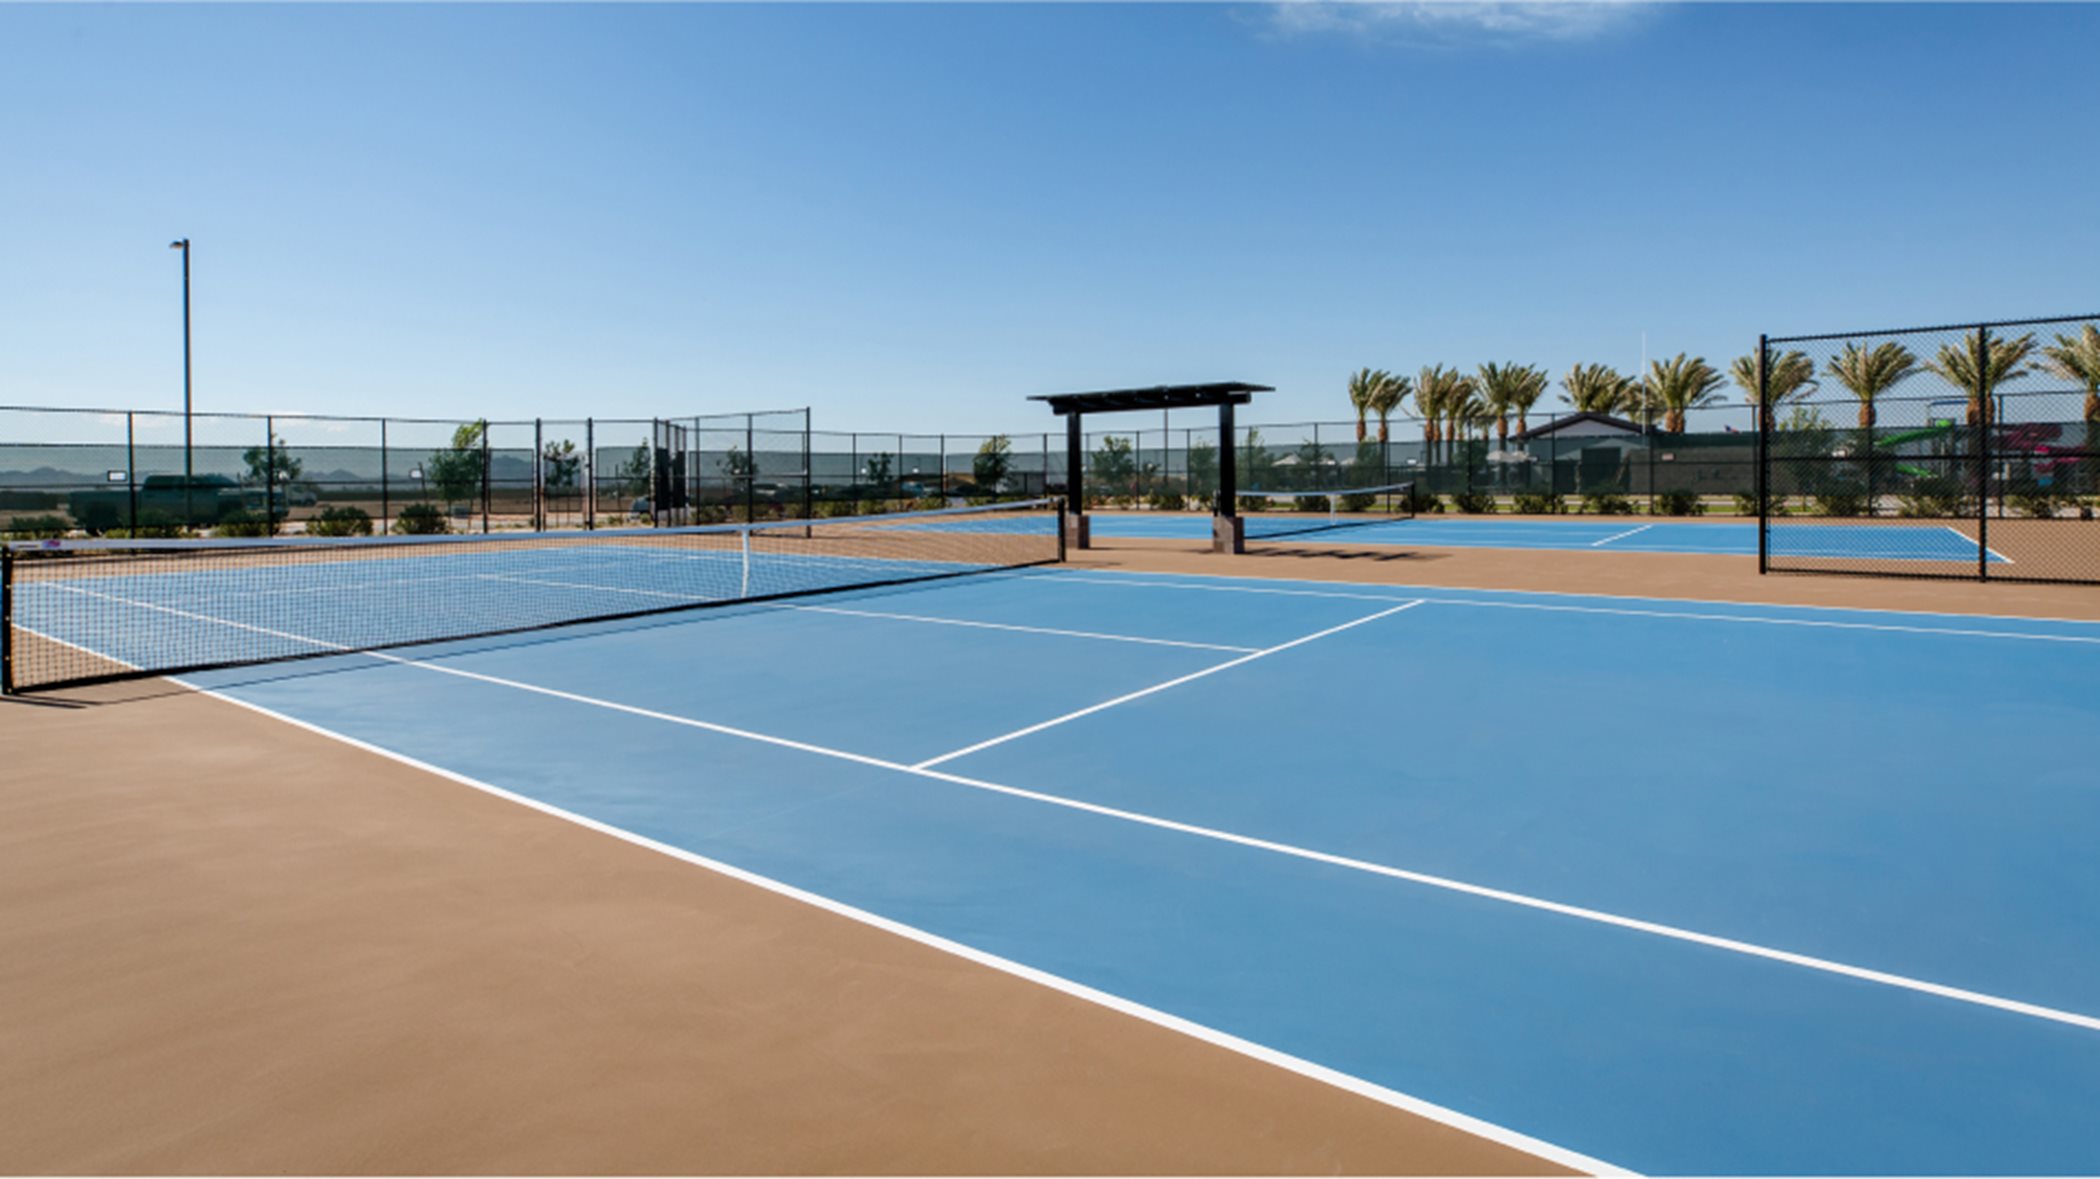 Tennis court in daylight